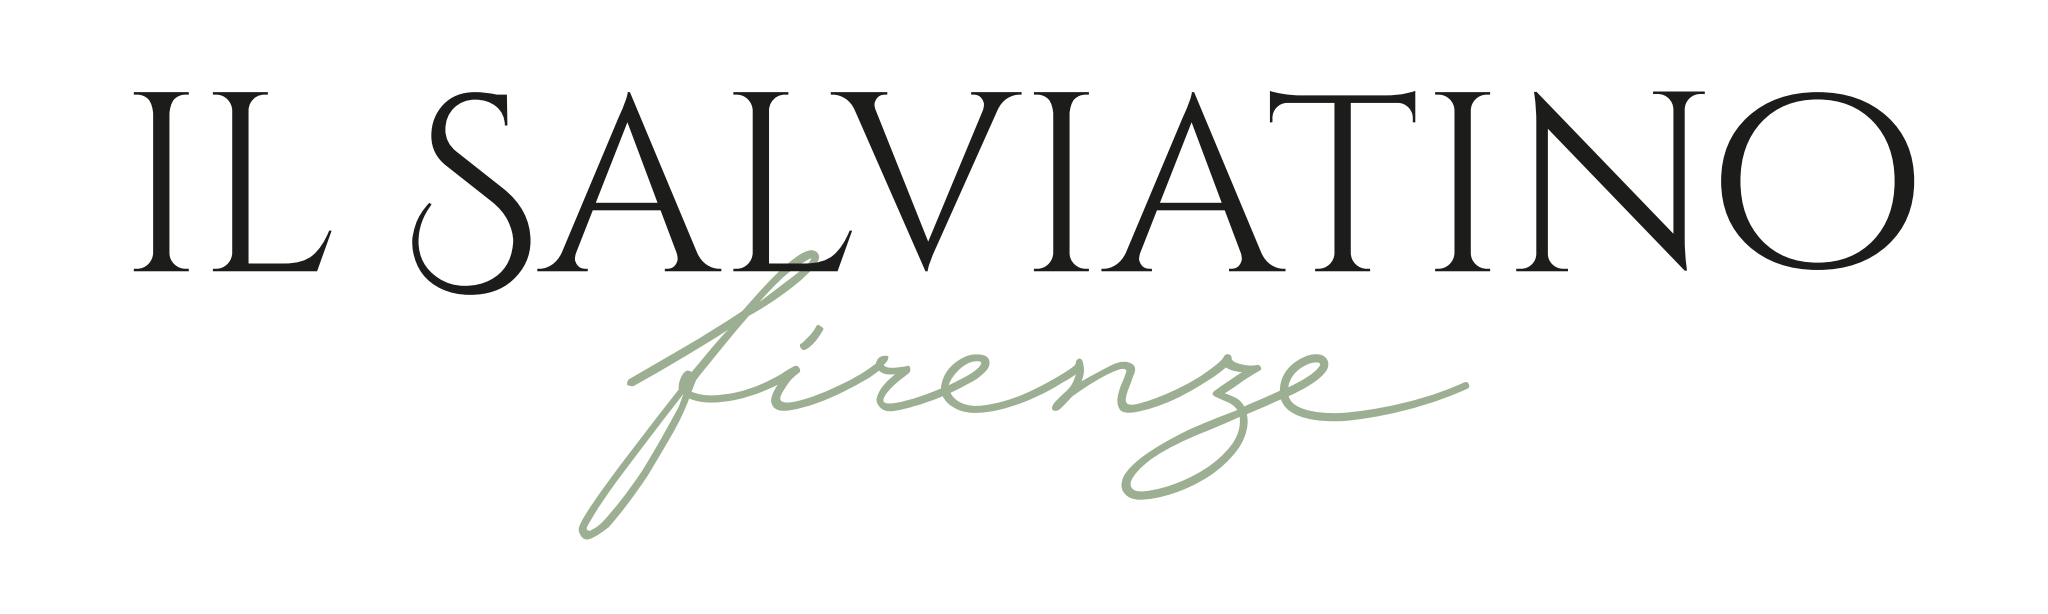 Il Salviatino logo